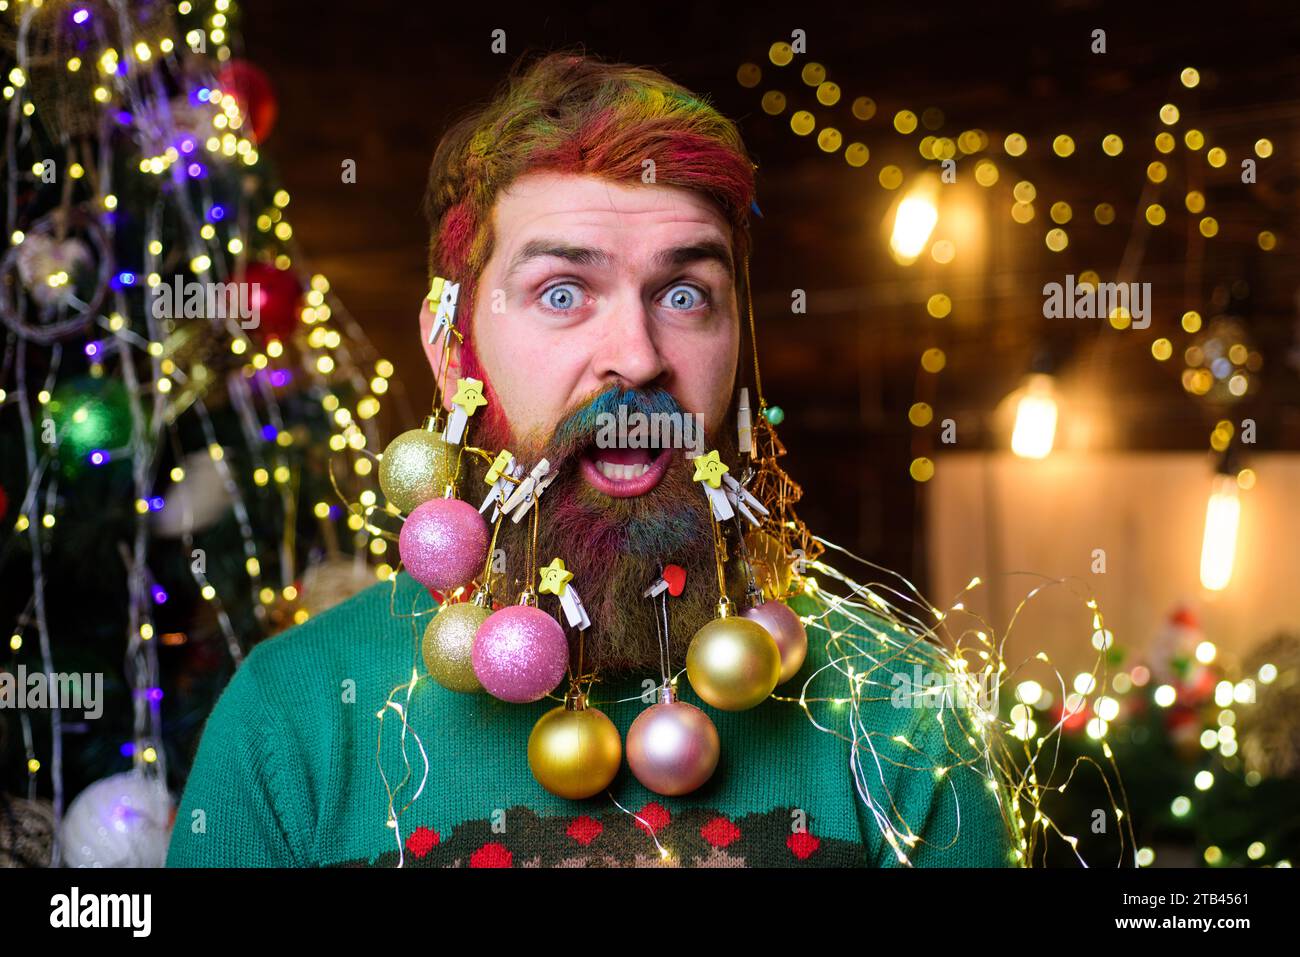 Frohe Weihnachten und frohes neues Jahr. Nahaufnahme Porträt eines überraschten Mannes mit dekorativen Kugeln im Bart. Bärtiger Mann mit verziertem Bart für Stockfoto